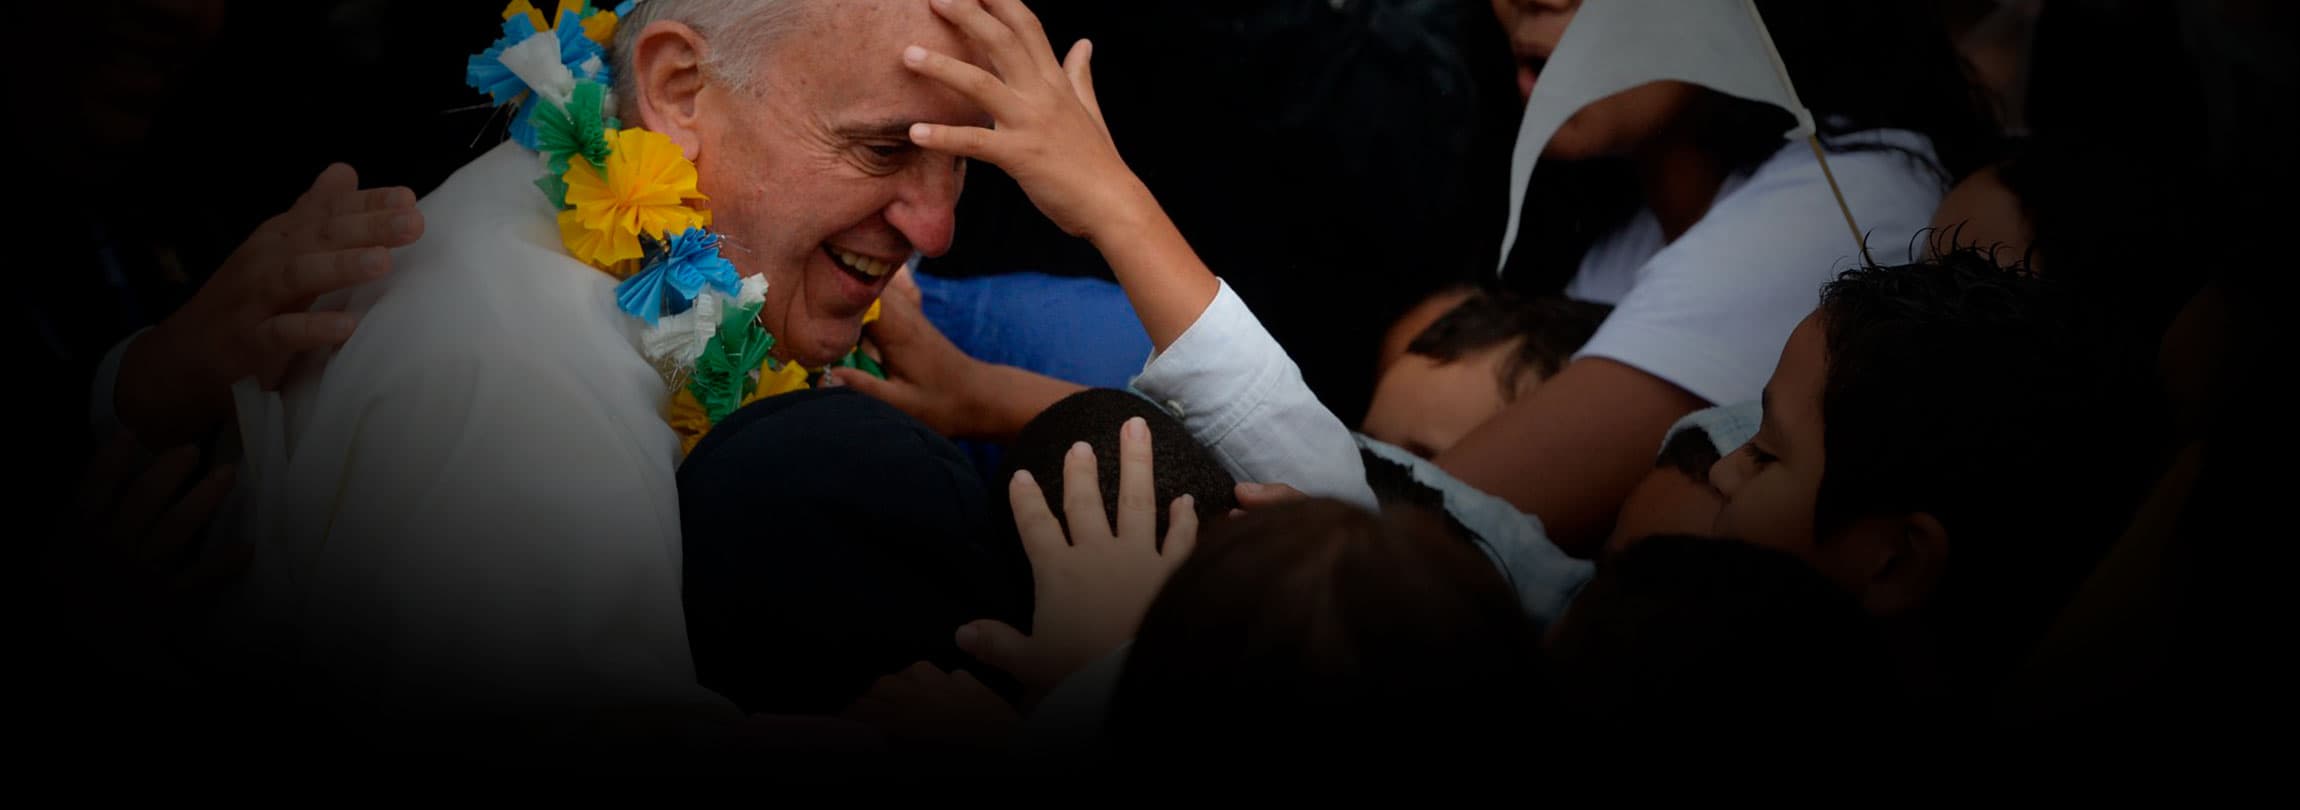 Papa é acolhido por multidão de jovens em Copacabana